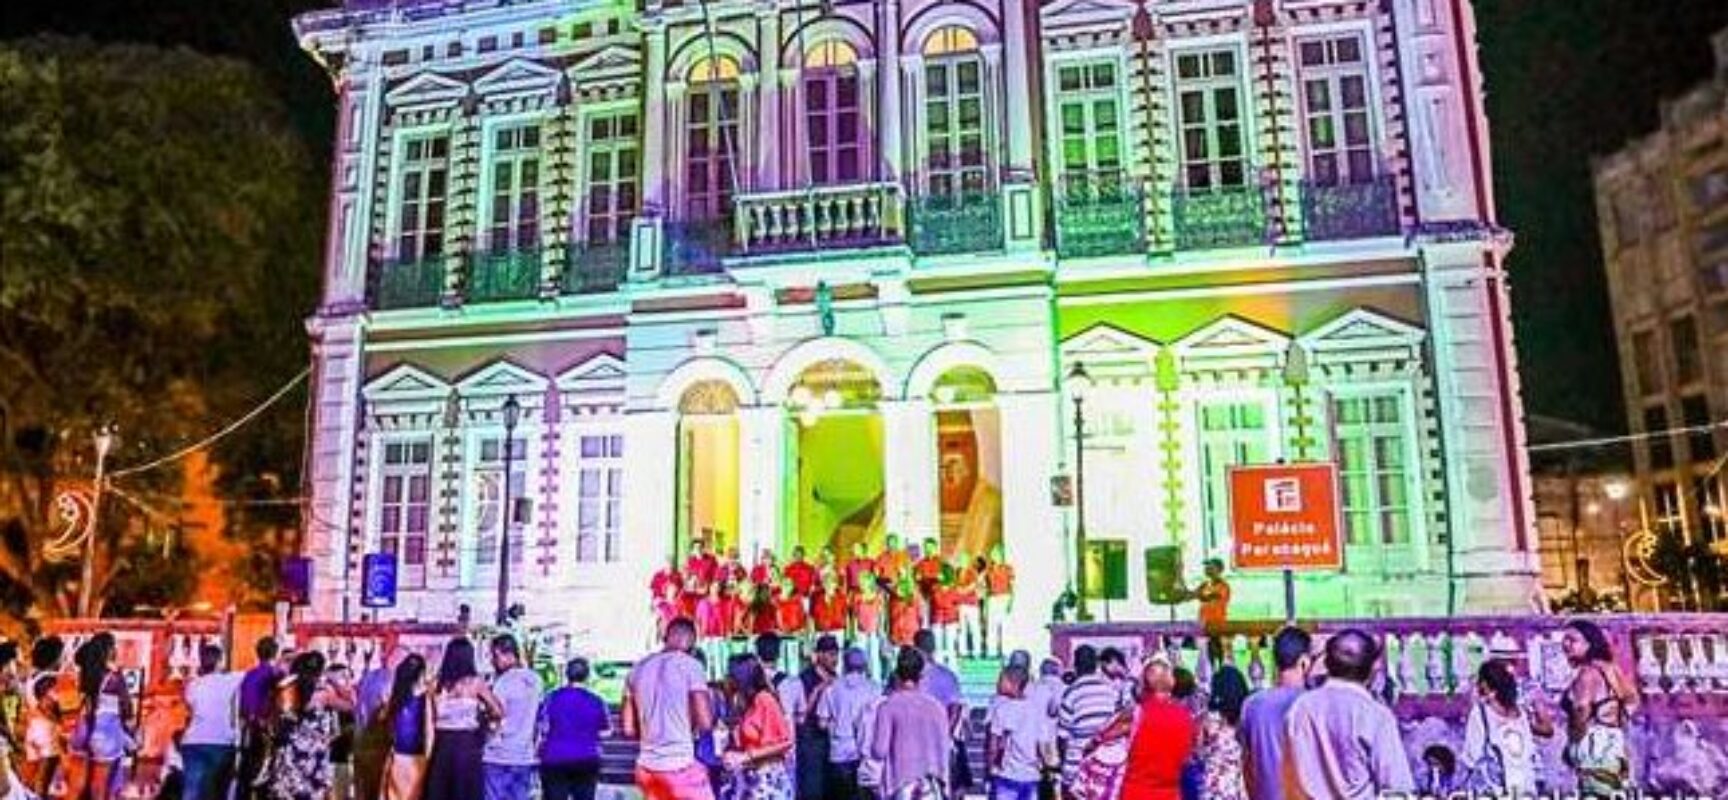 Cantatas de Natal começam nesta terça (12); corais se apresentam nas escadarias do Palácio Paranaguá